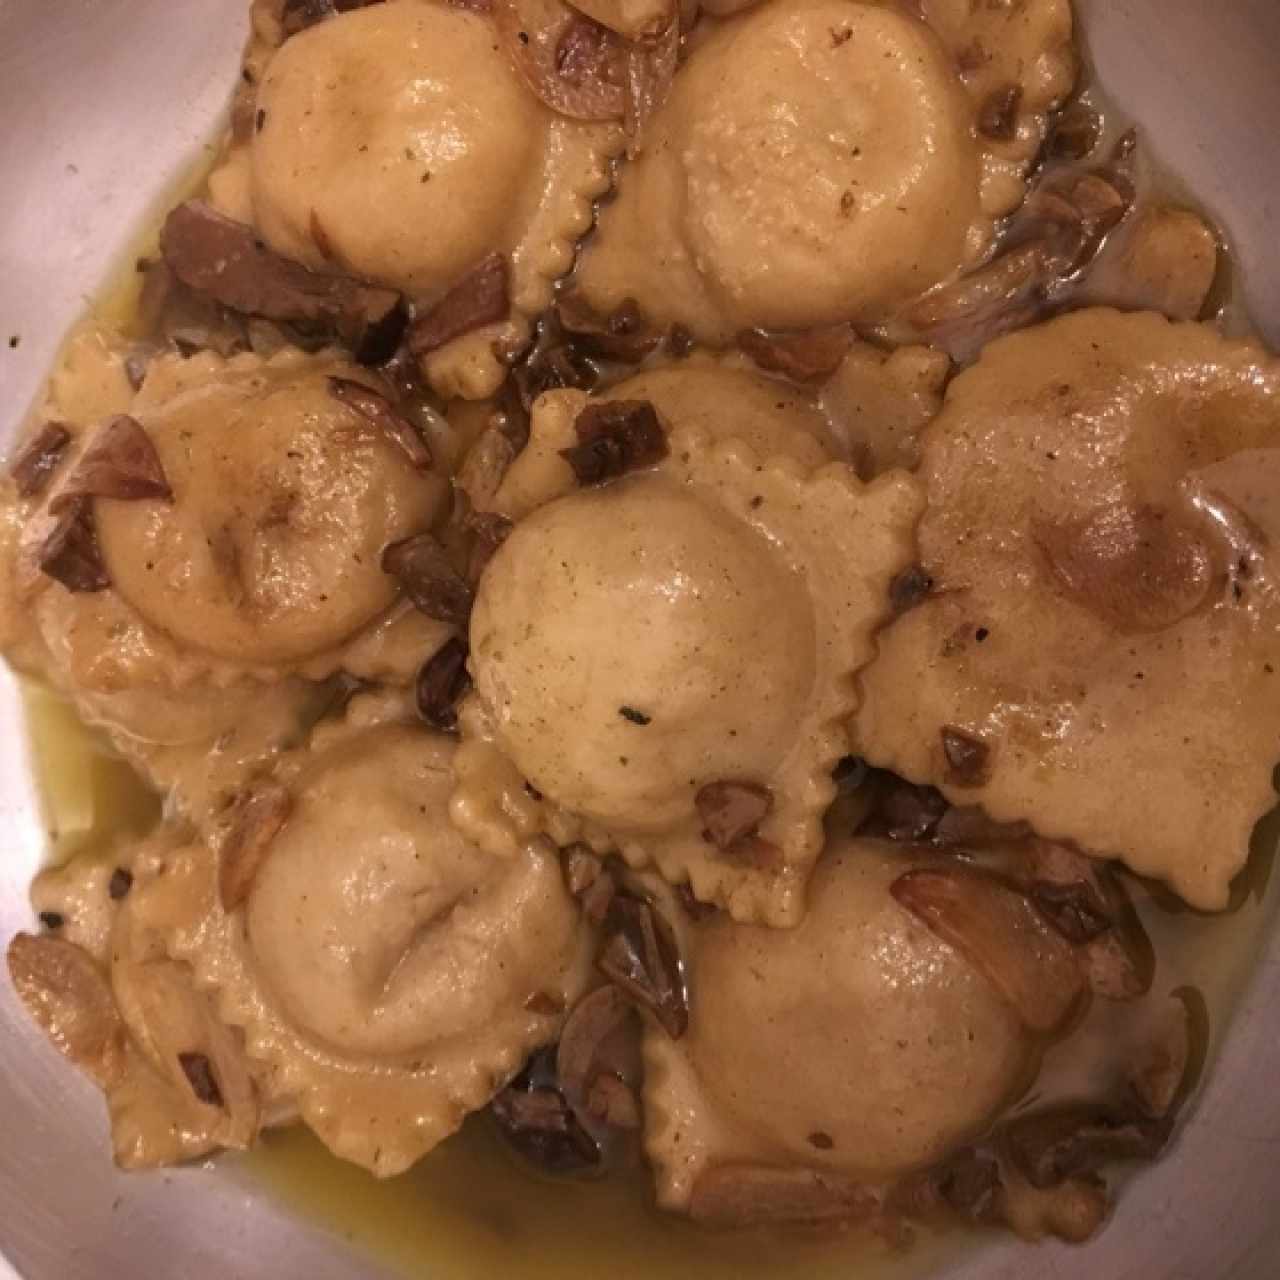 Pastas - Ravioli Vegano Trufado